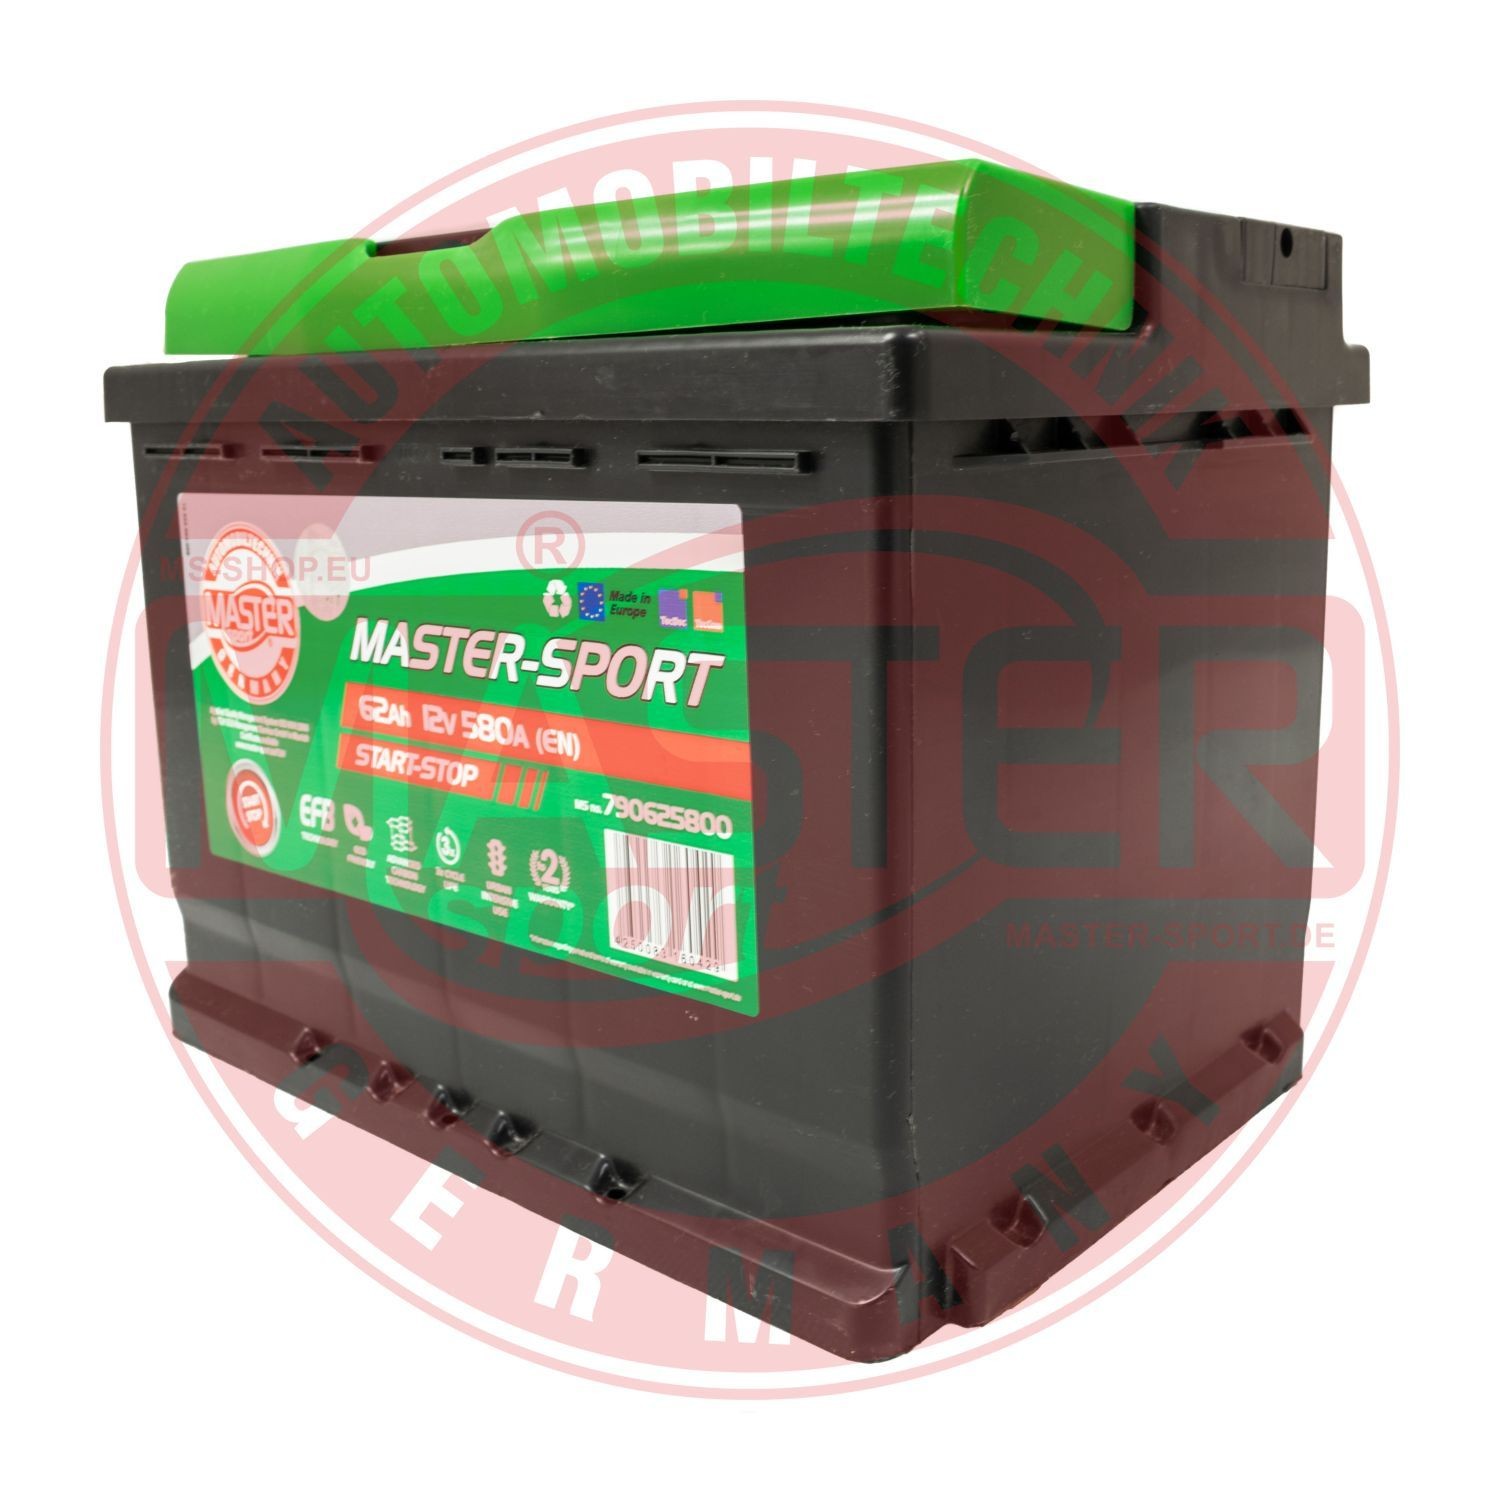 Honda LEGEND Battery 10215478 MASTER-SPORT 790625800 online buy